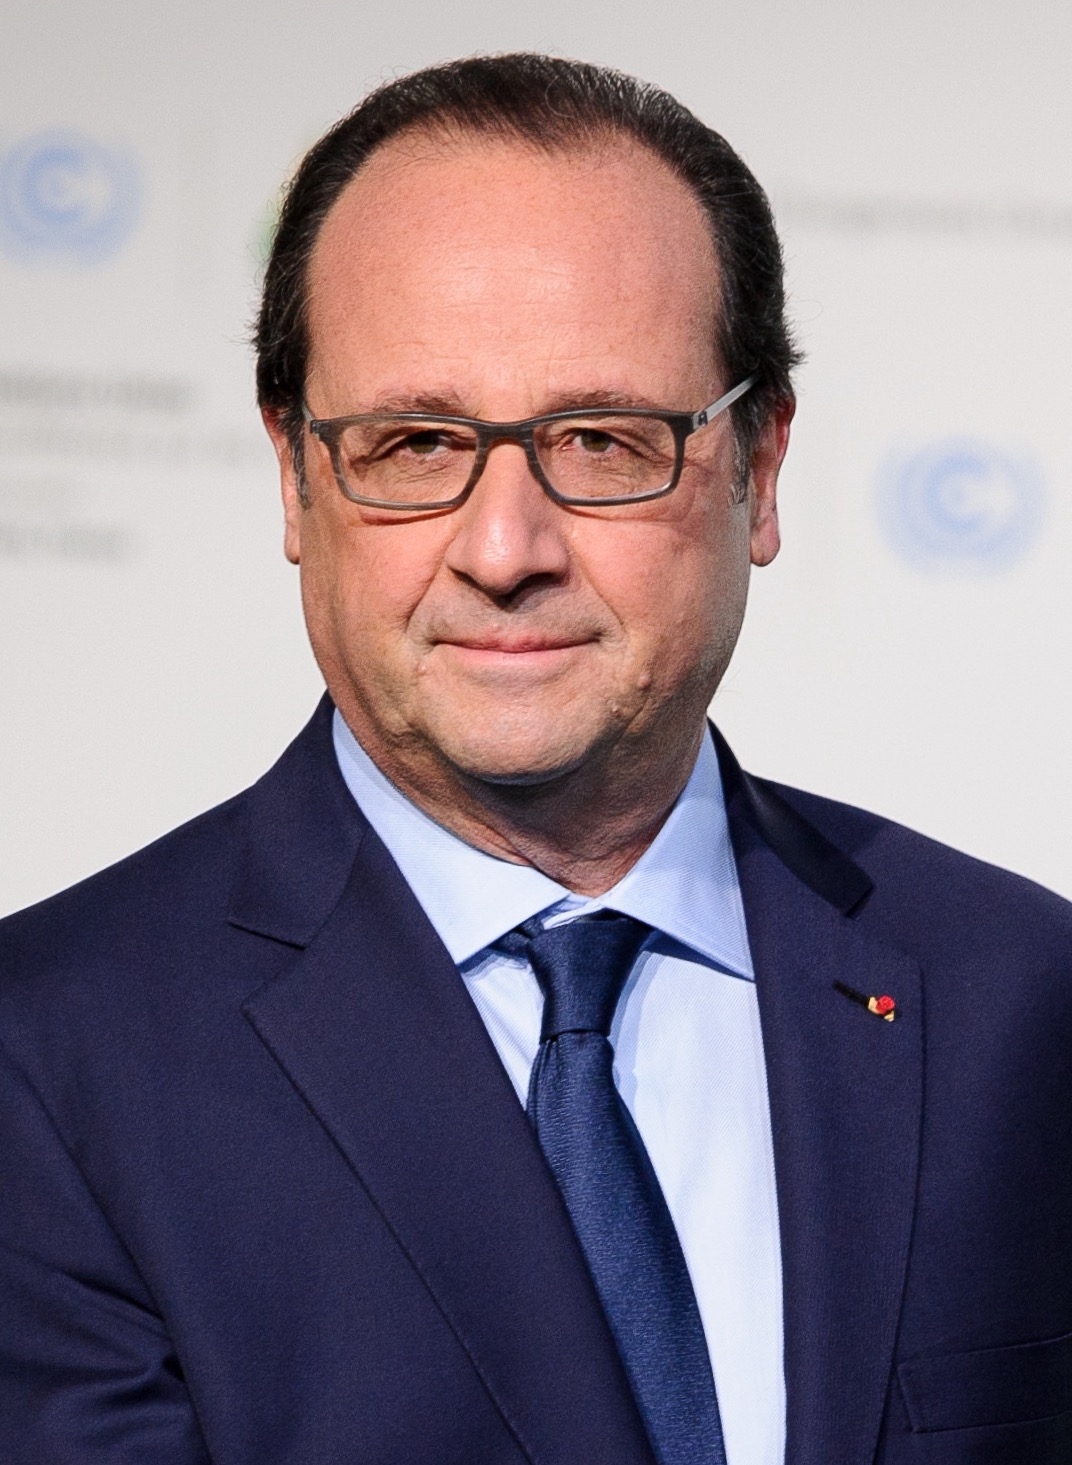 auteur François Hollande de la citation La France veut que la Grande-Bretagne reste dans l'UE.; En effet, comment pouvons-nous imaginer cette nation amicale qui est notre allié et qui a joué un rôle sur la scène internationale pourrait être en dehors de l'UE?